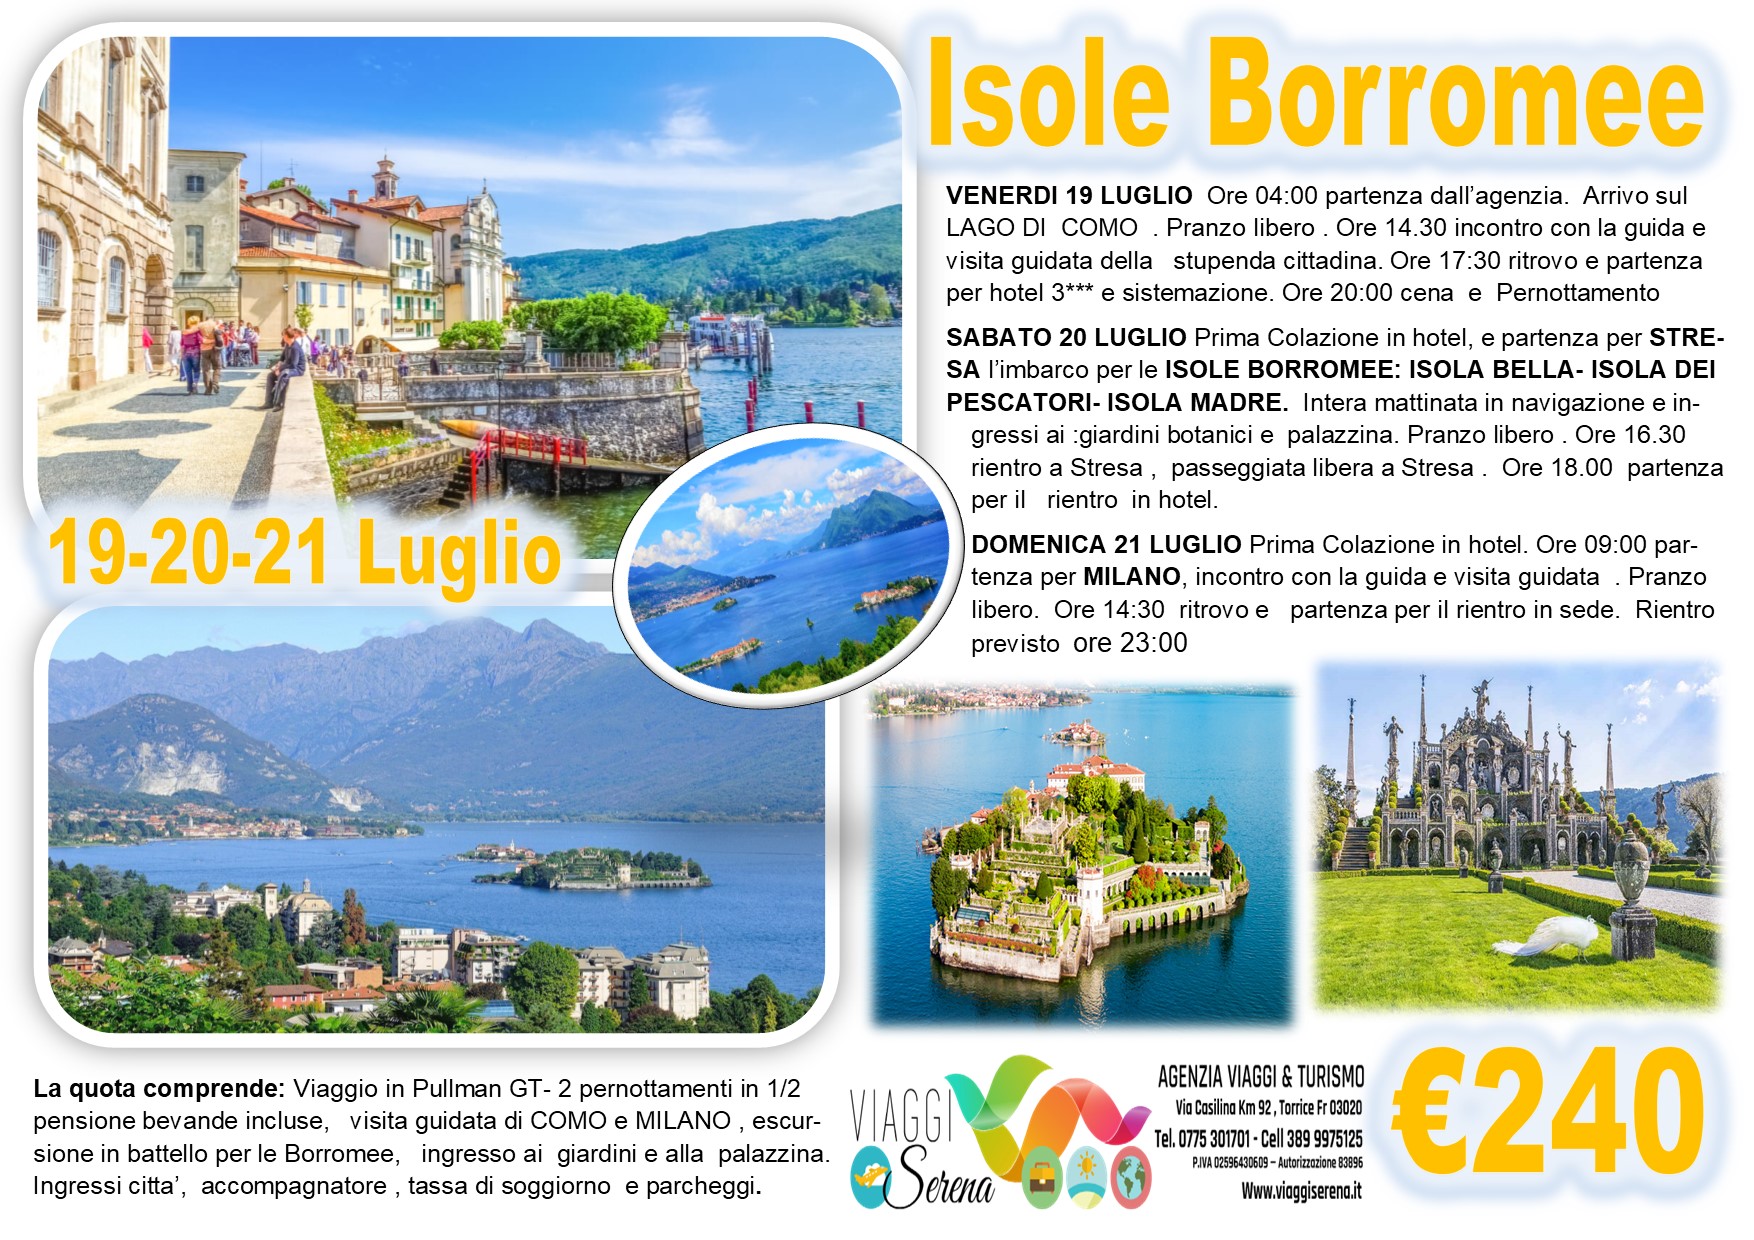 Viaggi di gruppo: Isole Borromee, Stresa, Como & Milano 19-20-21 Luglio €240,00